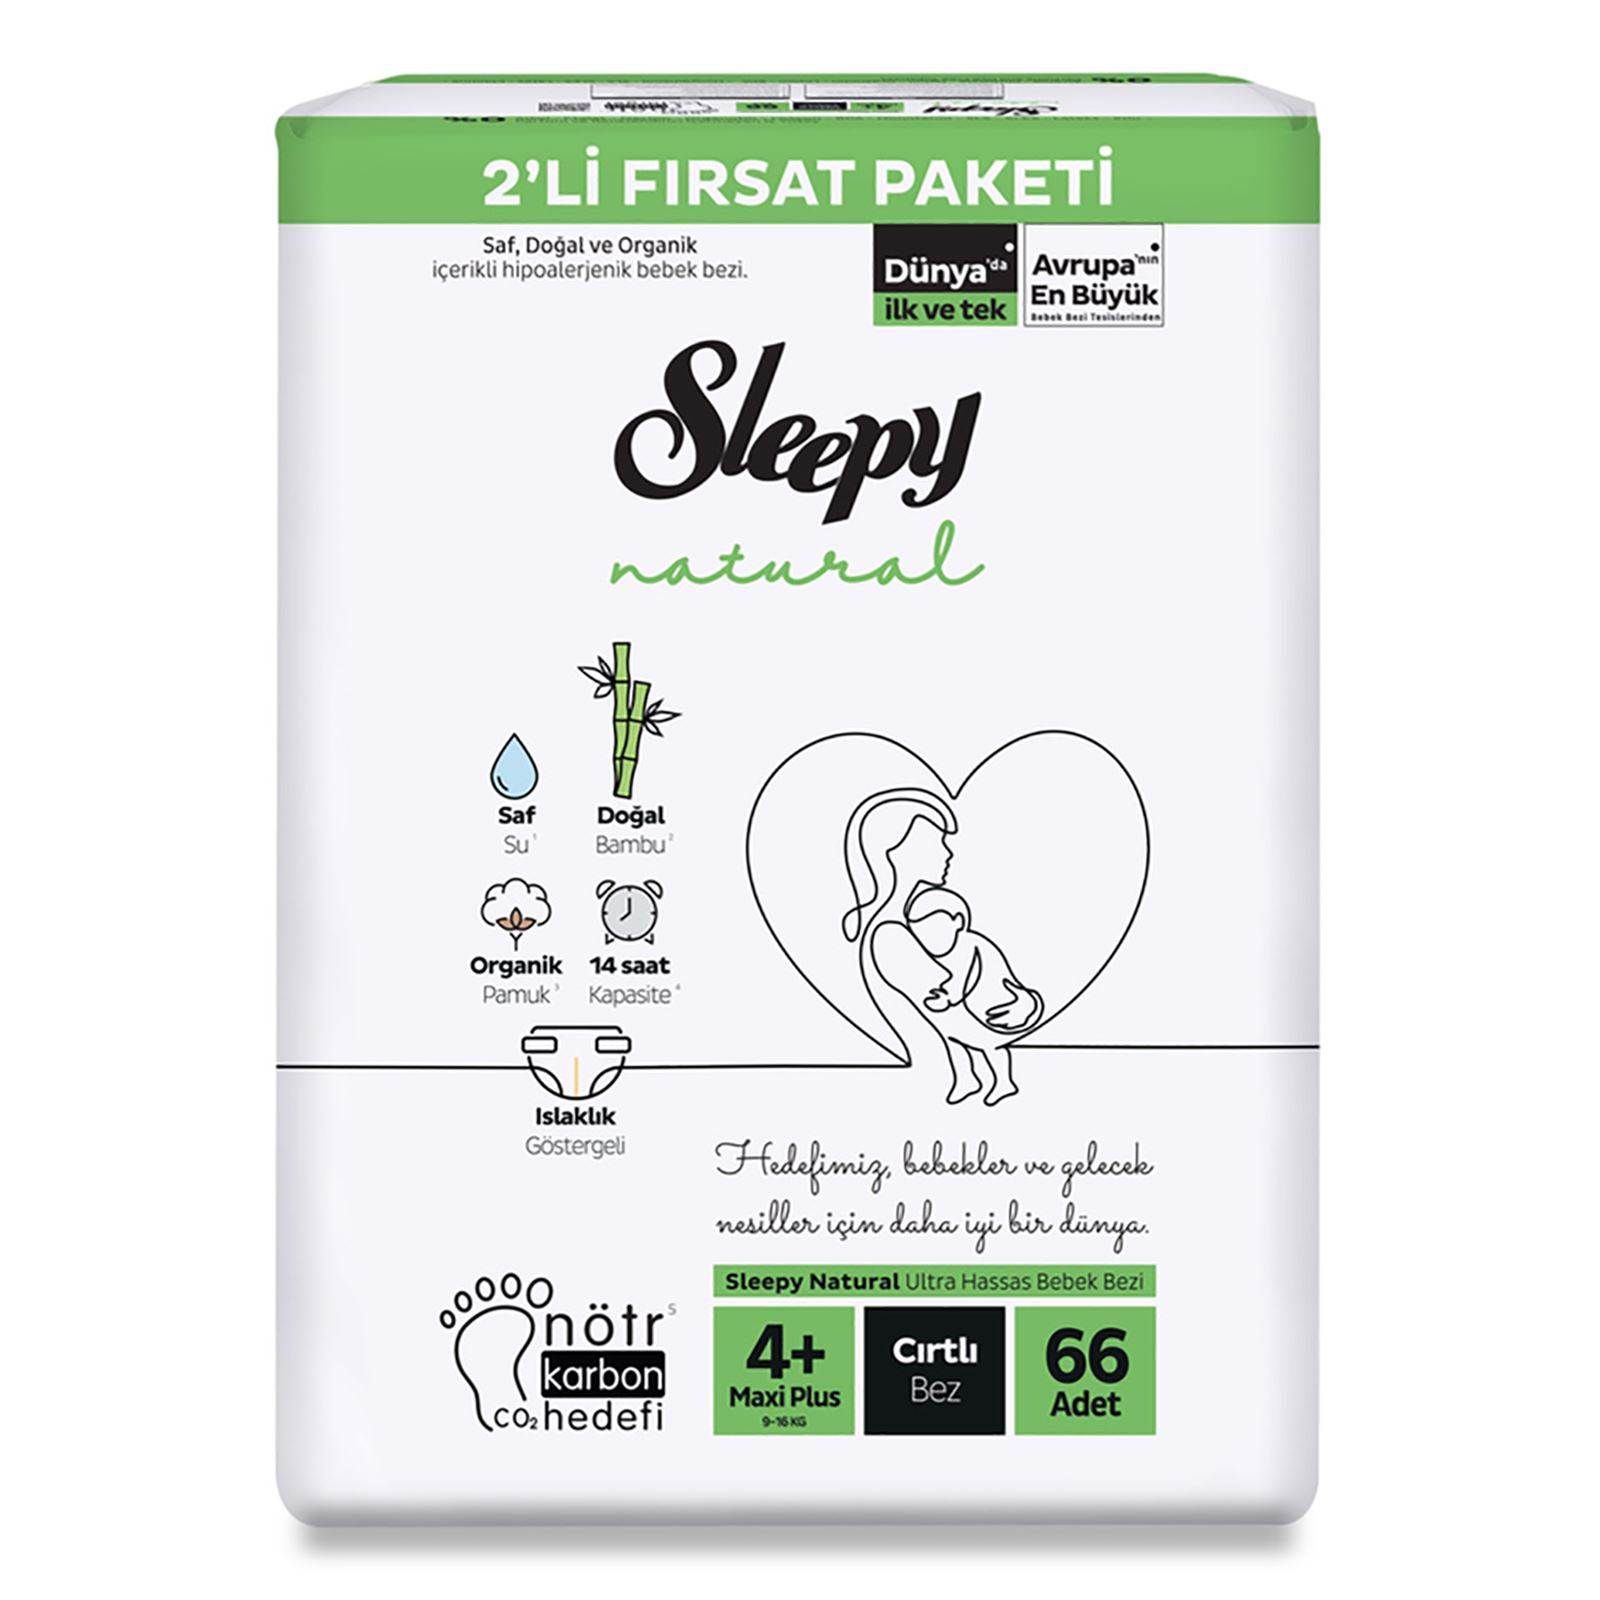 Sleepy Natural Fırsat Paketi Bebek Bezi 4+ Maxi Plus Numara 66 Adet